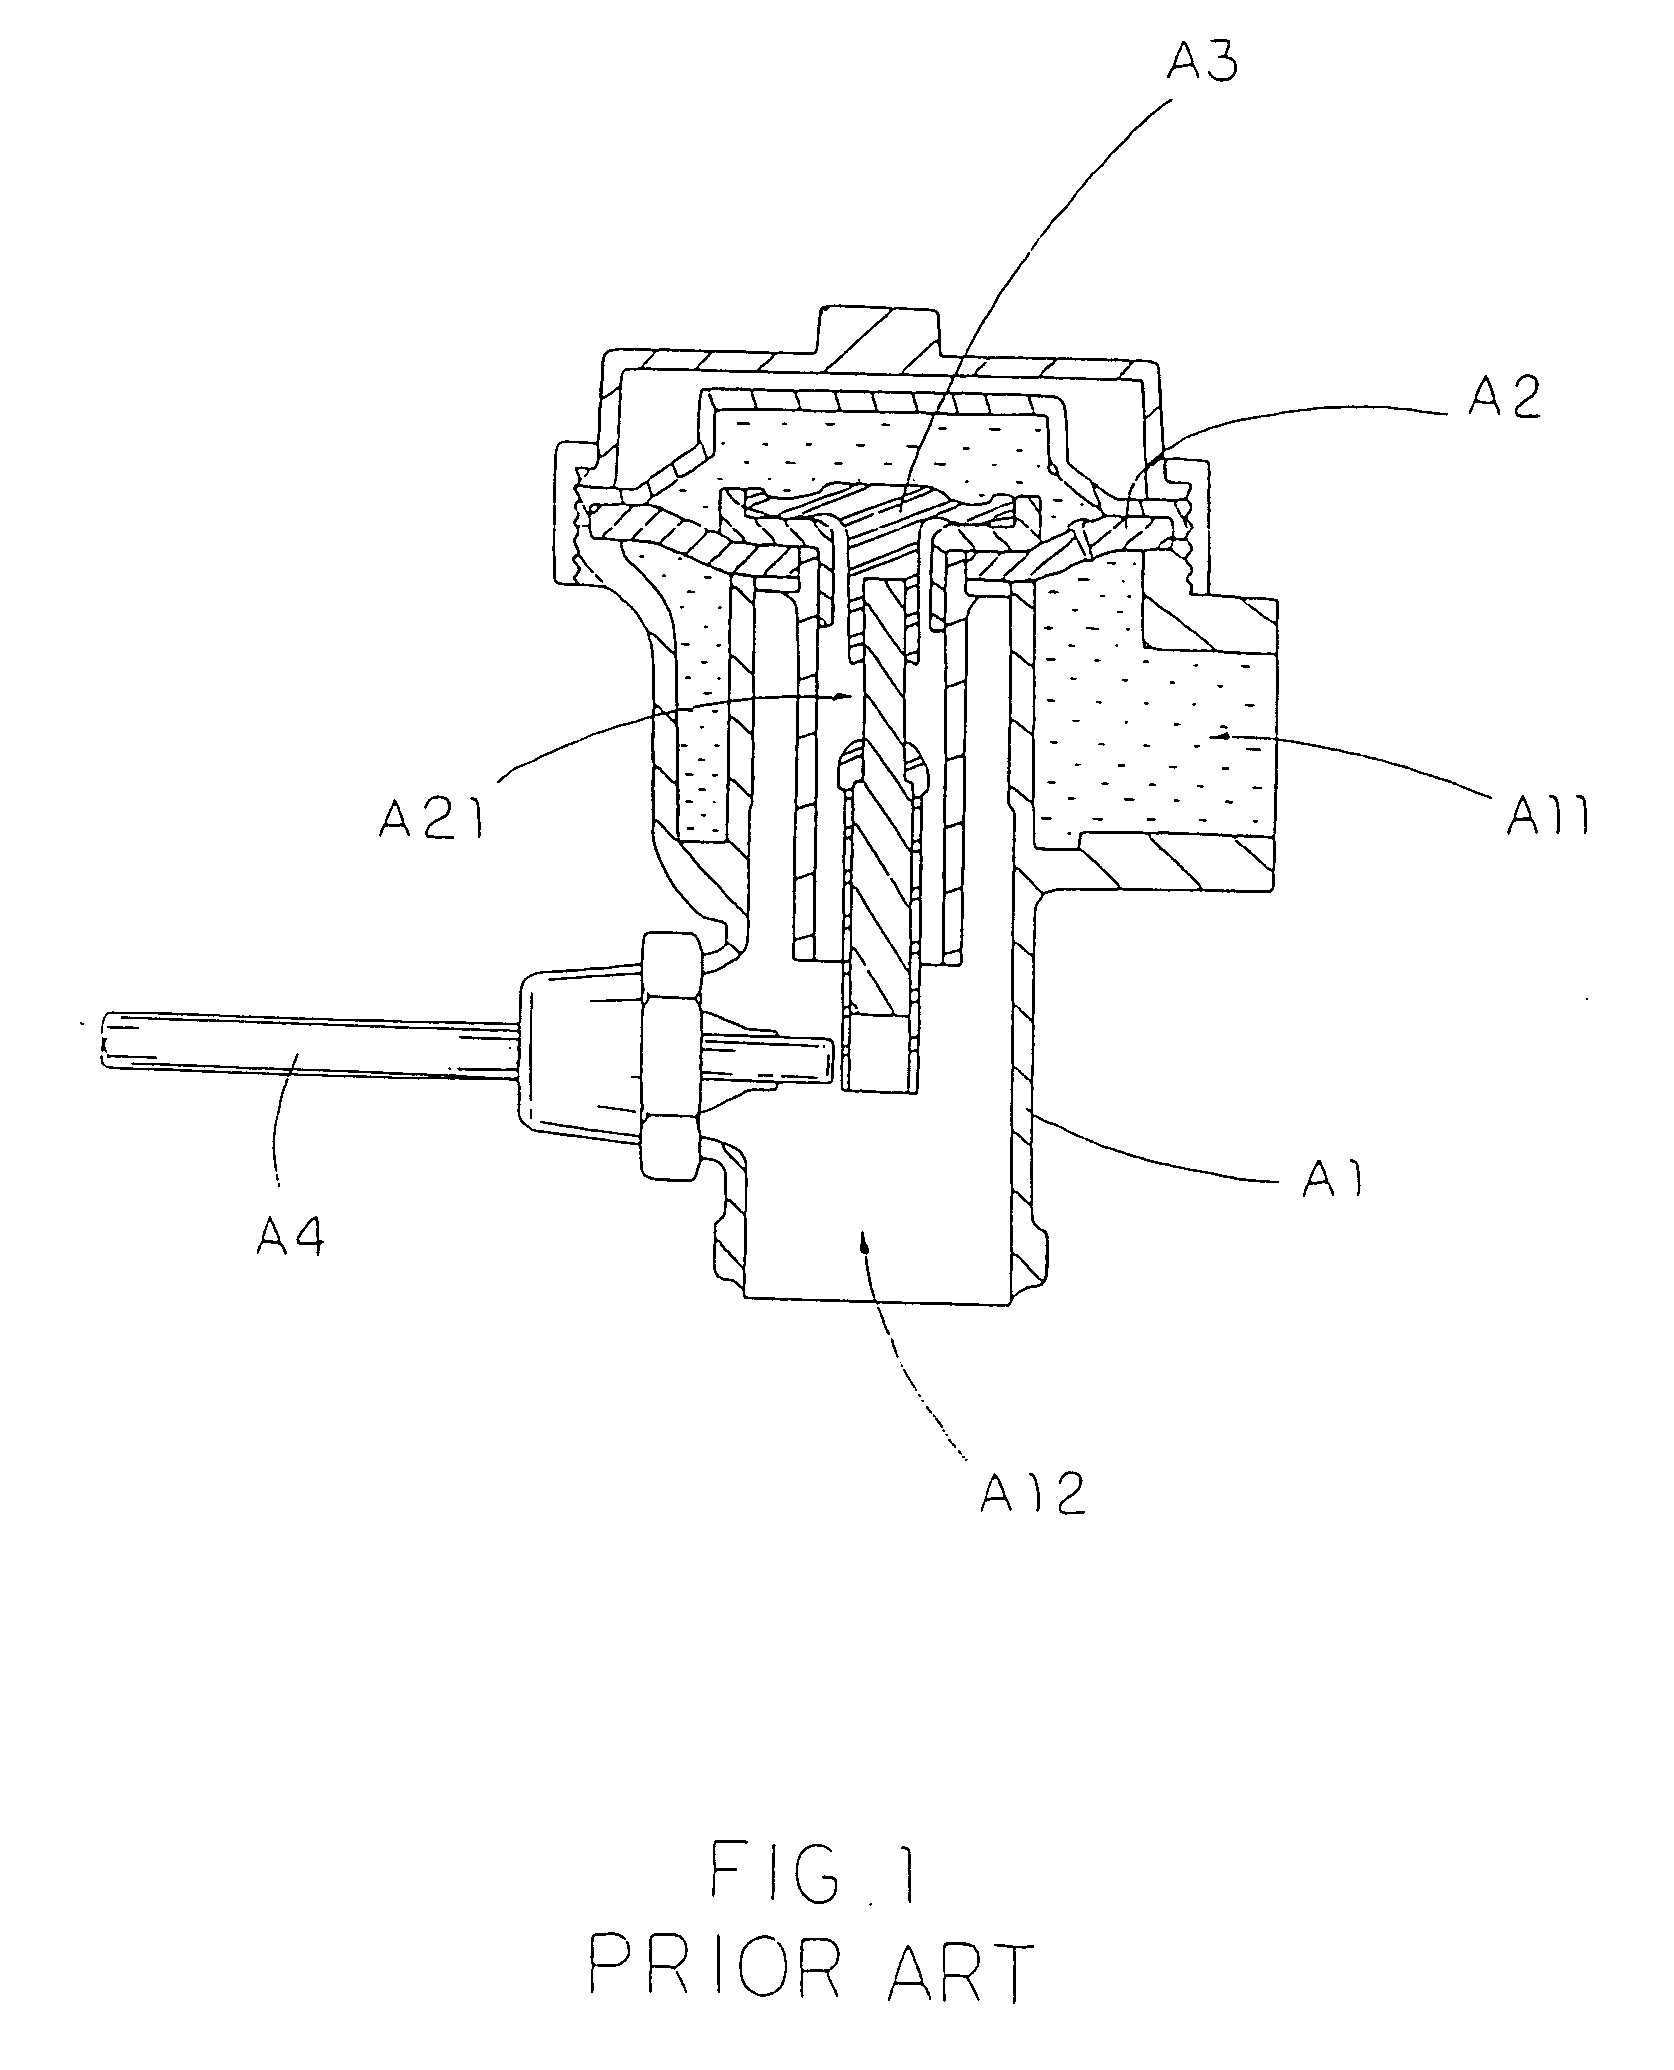 Actomatic flush actuation apparatus